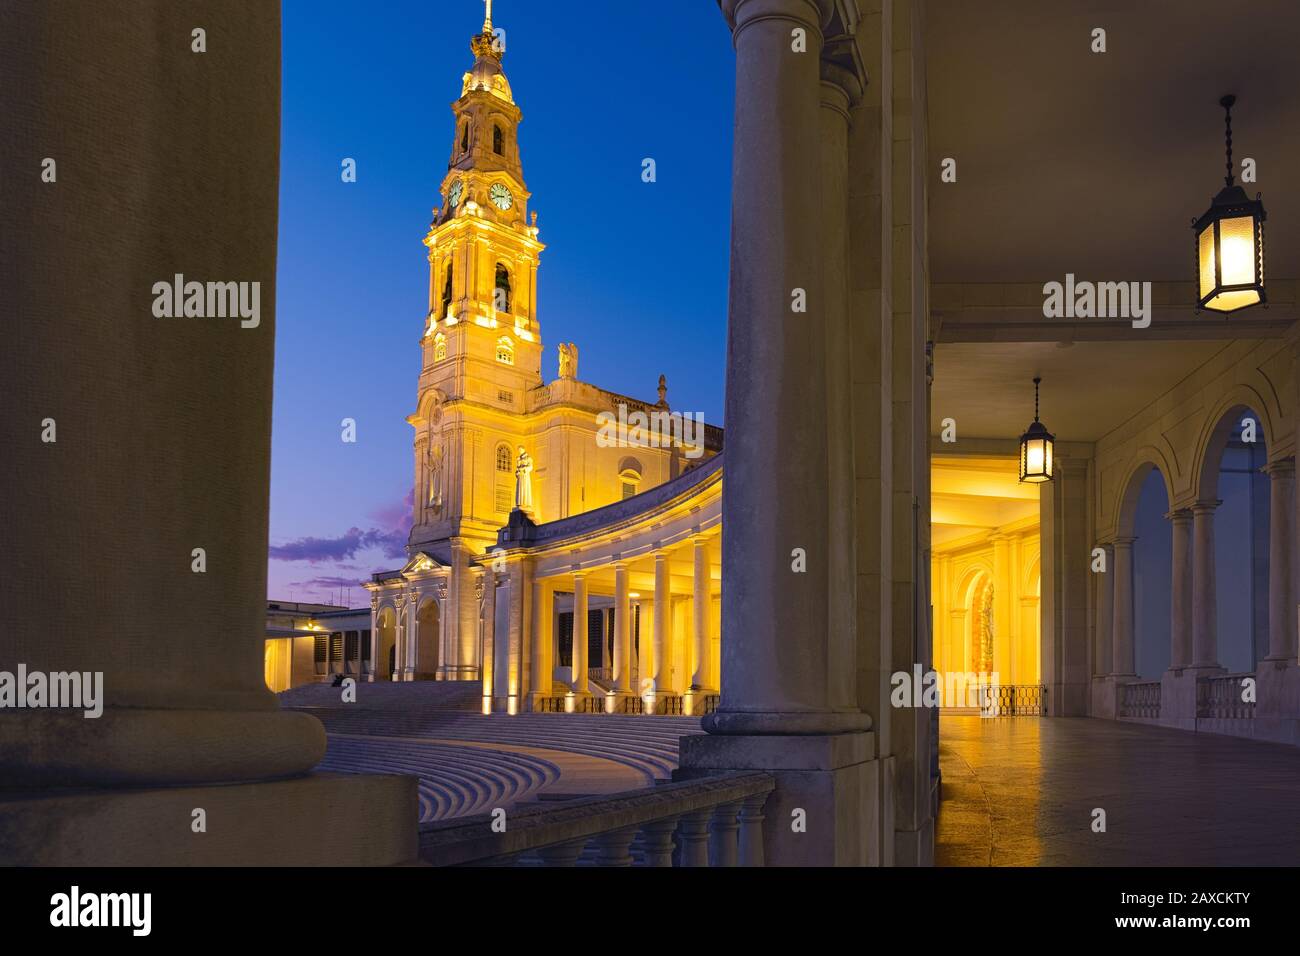 Das Fatima-Heiligtum Und Pilgerziel In Portugal Stockfoto